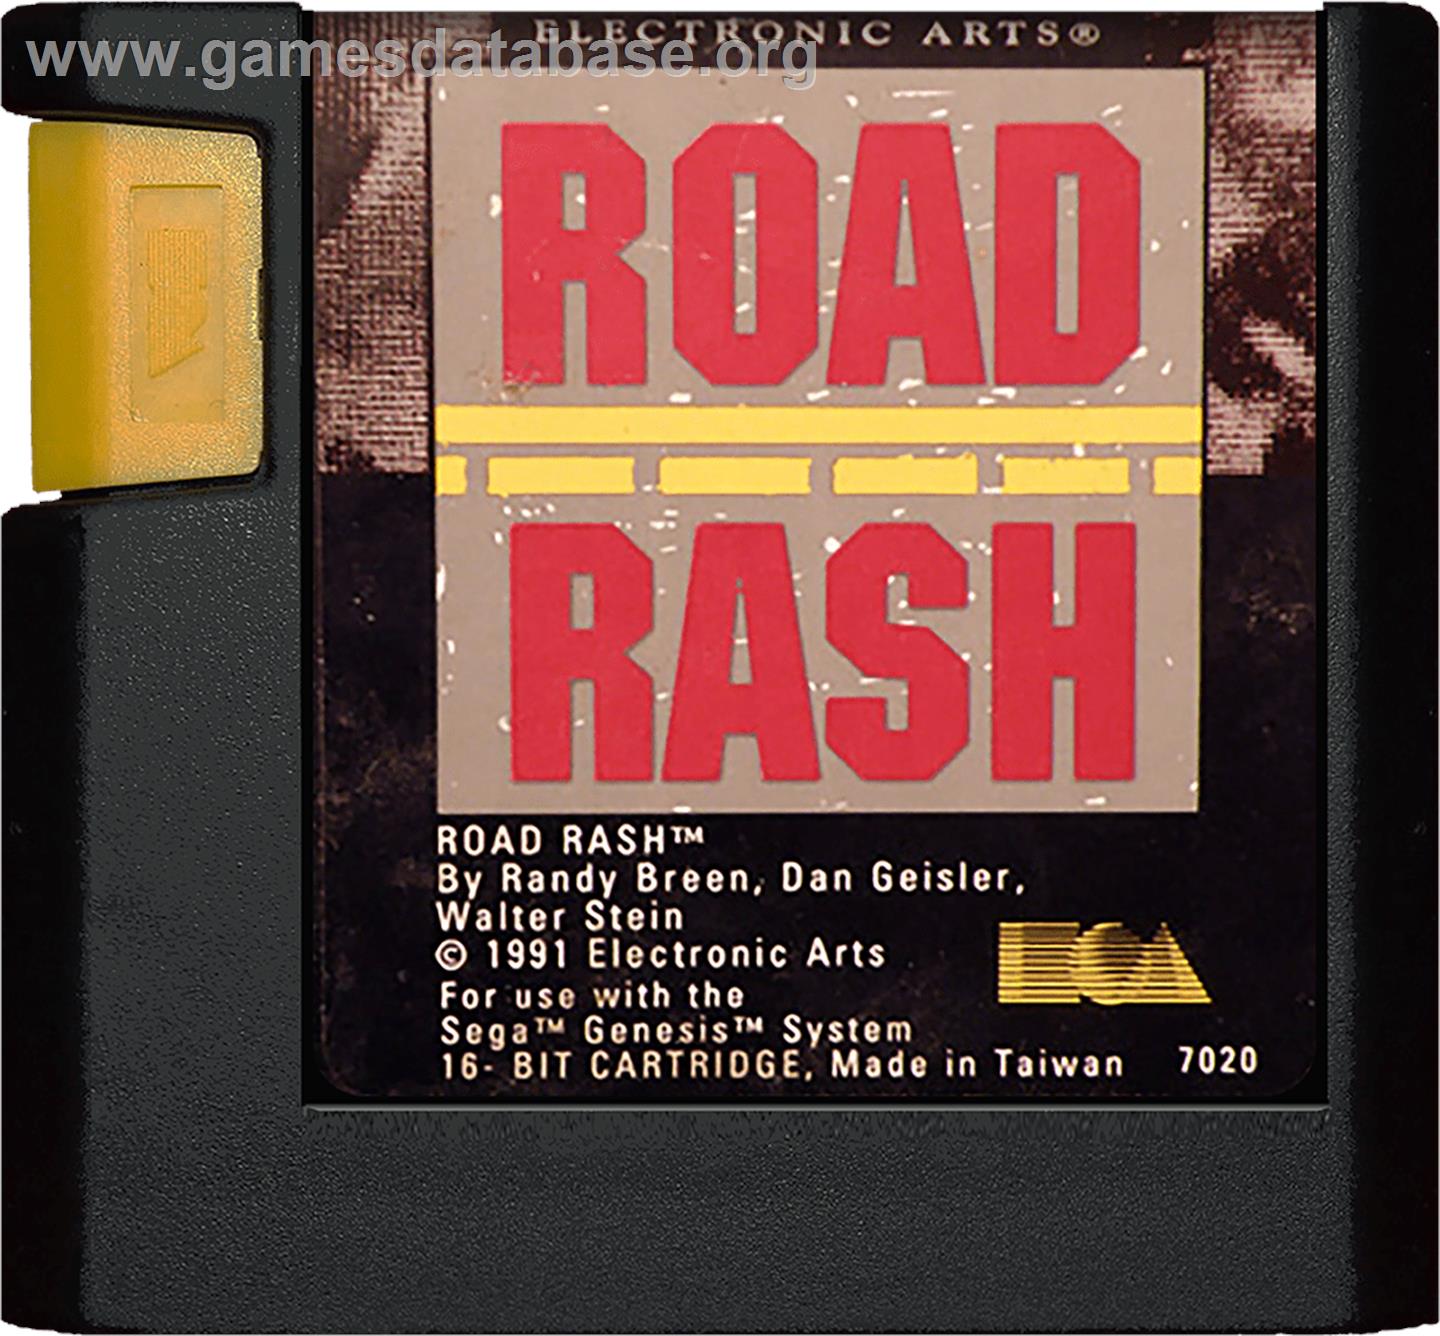 Road Rash - Sega Genesis - Artwork - Cartridge